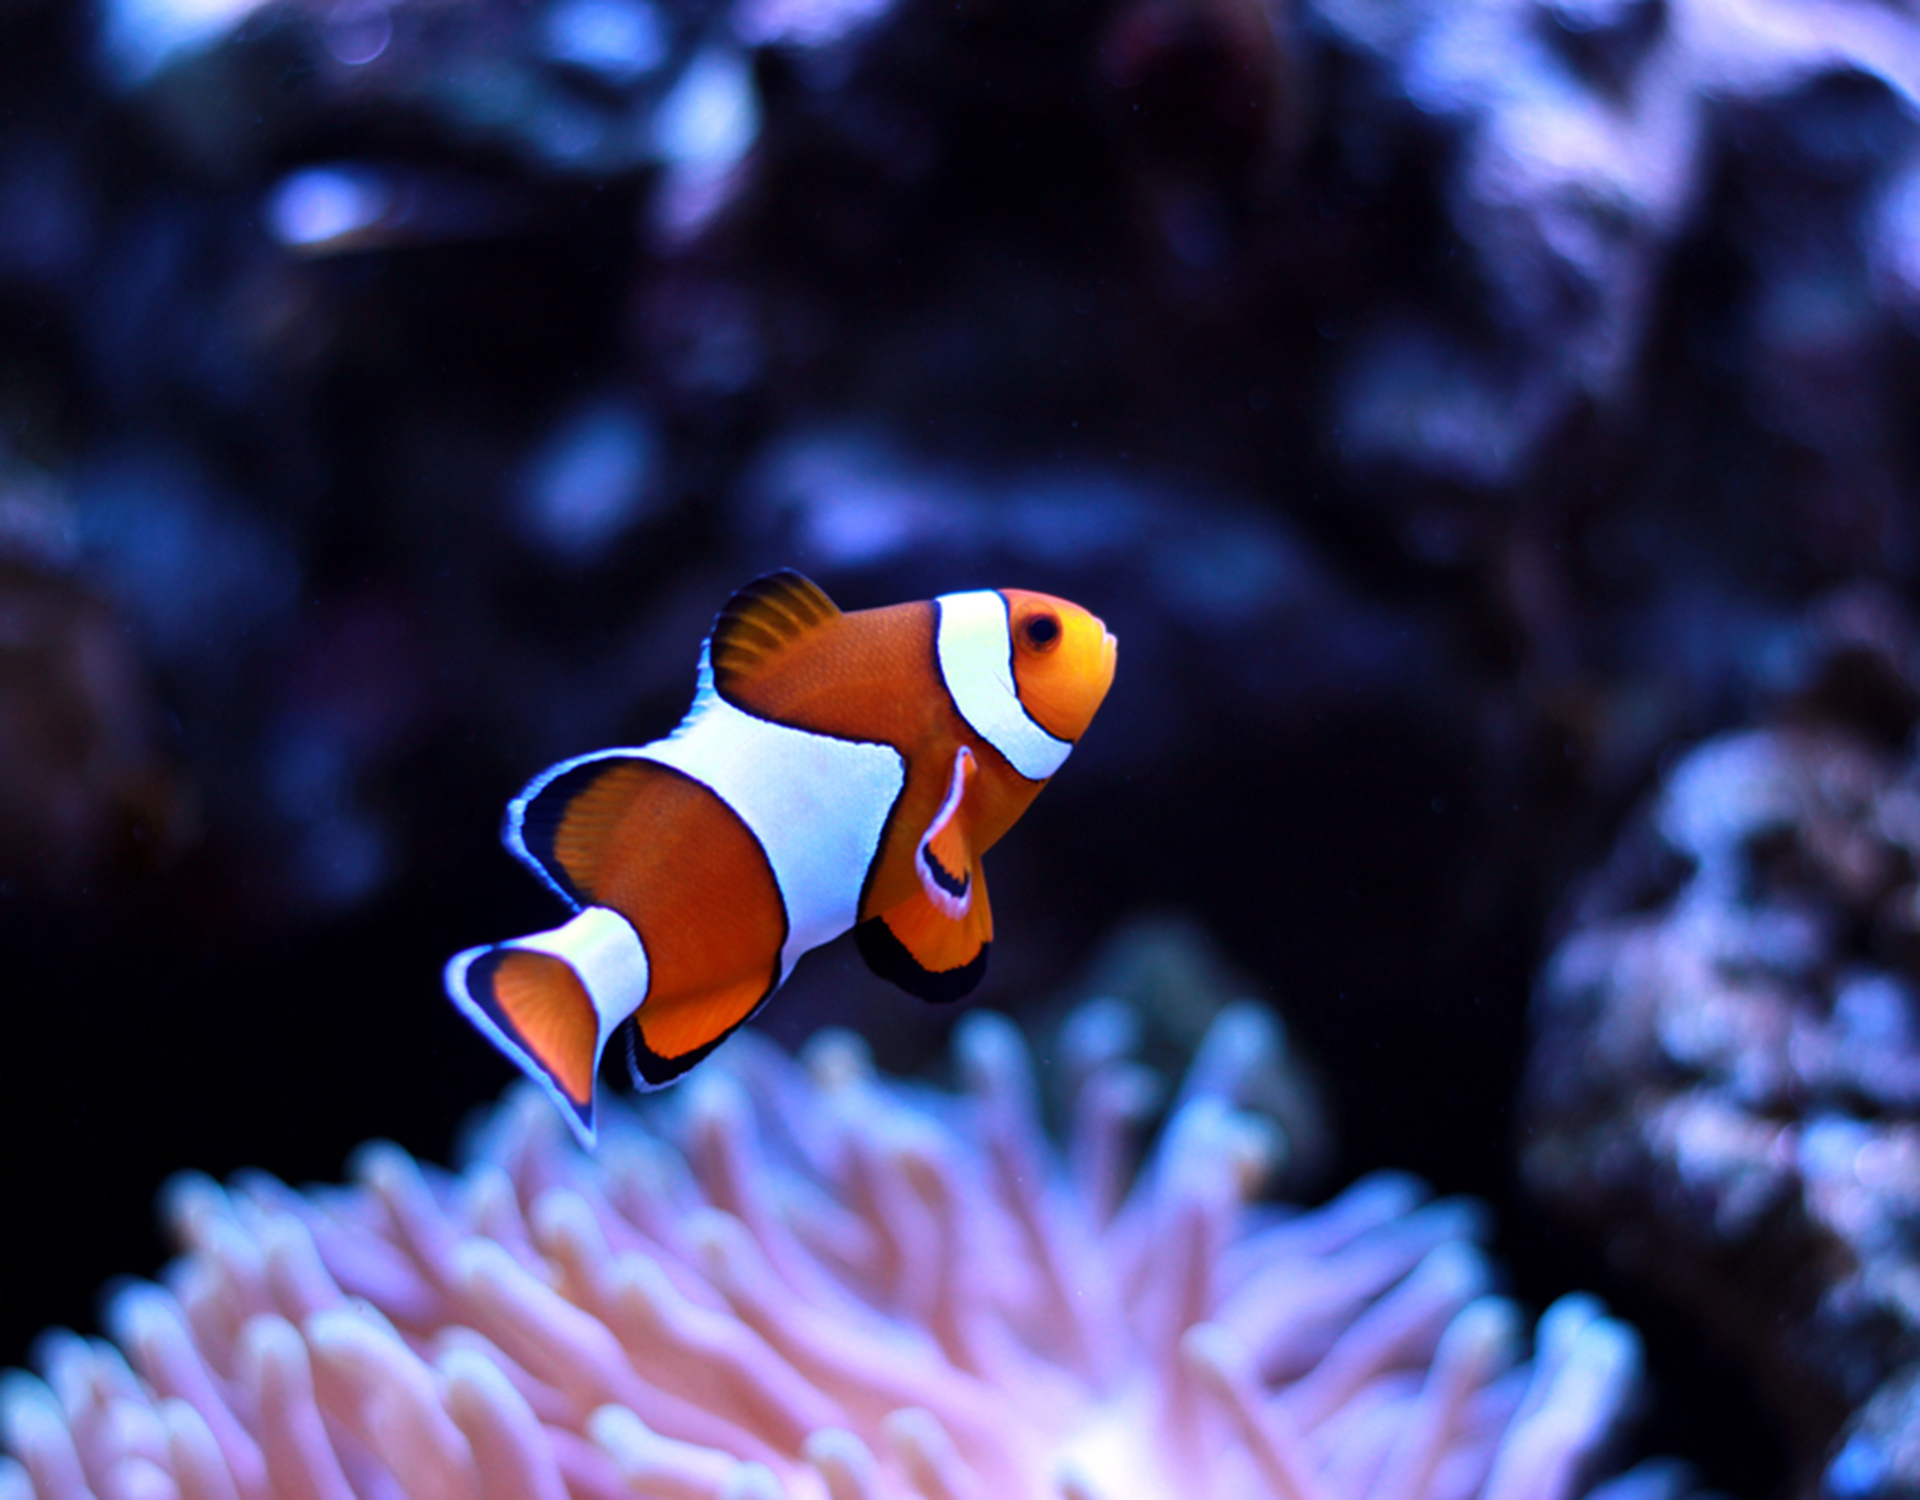 A tropical fish swims near a coral reef against a dark ocean